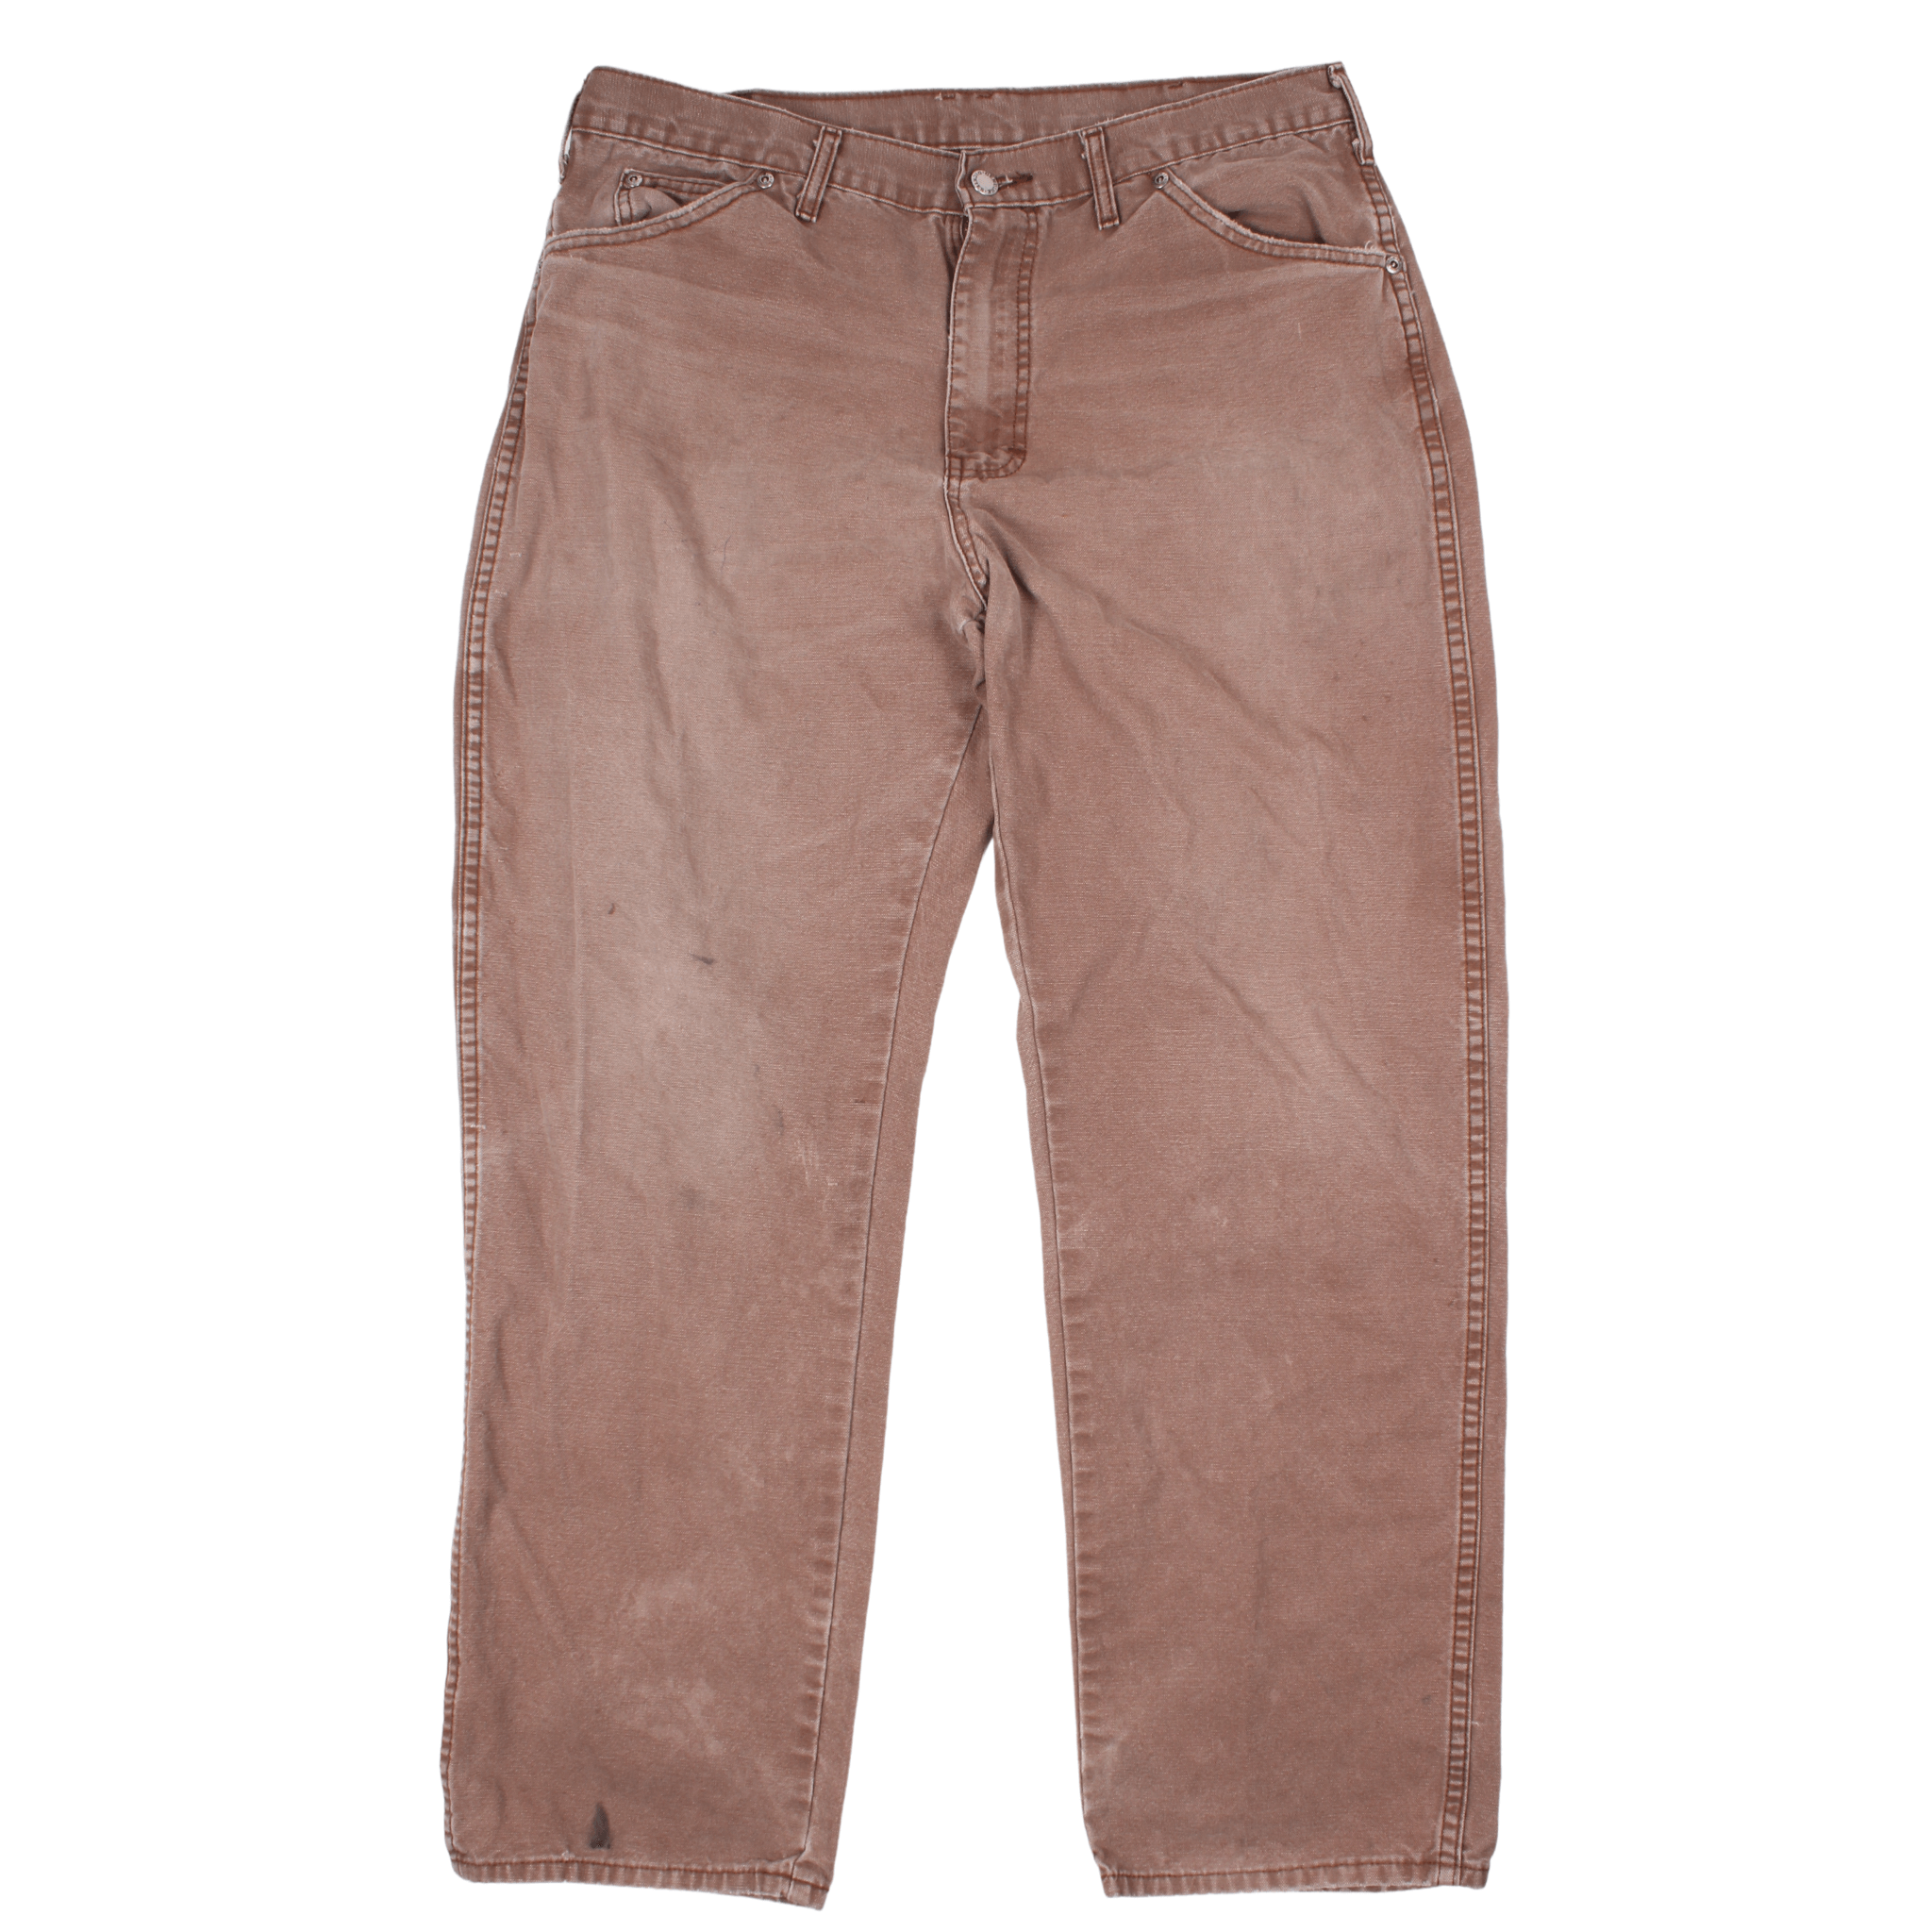 Vintage Dickies Carpenter Trousers (34